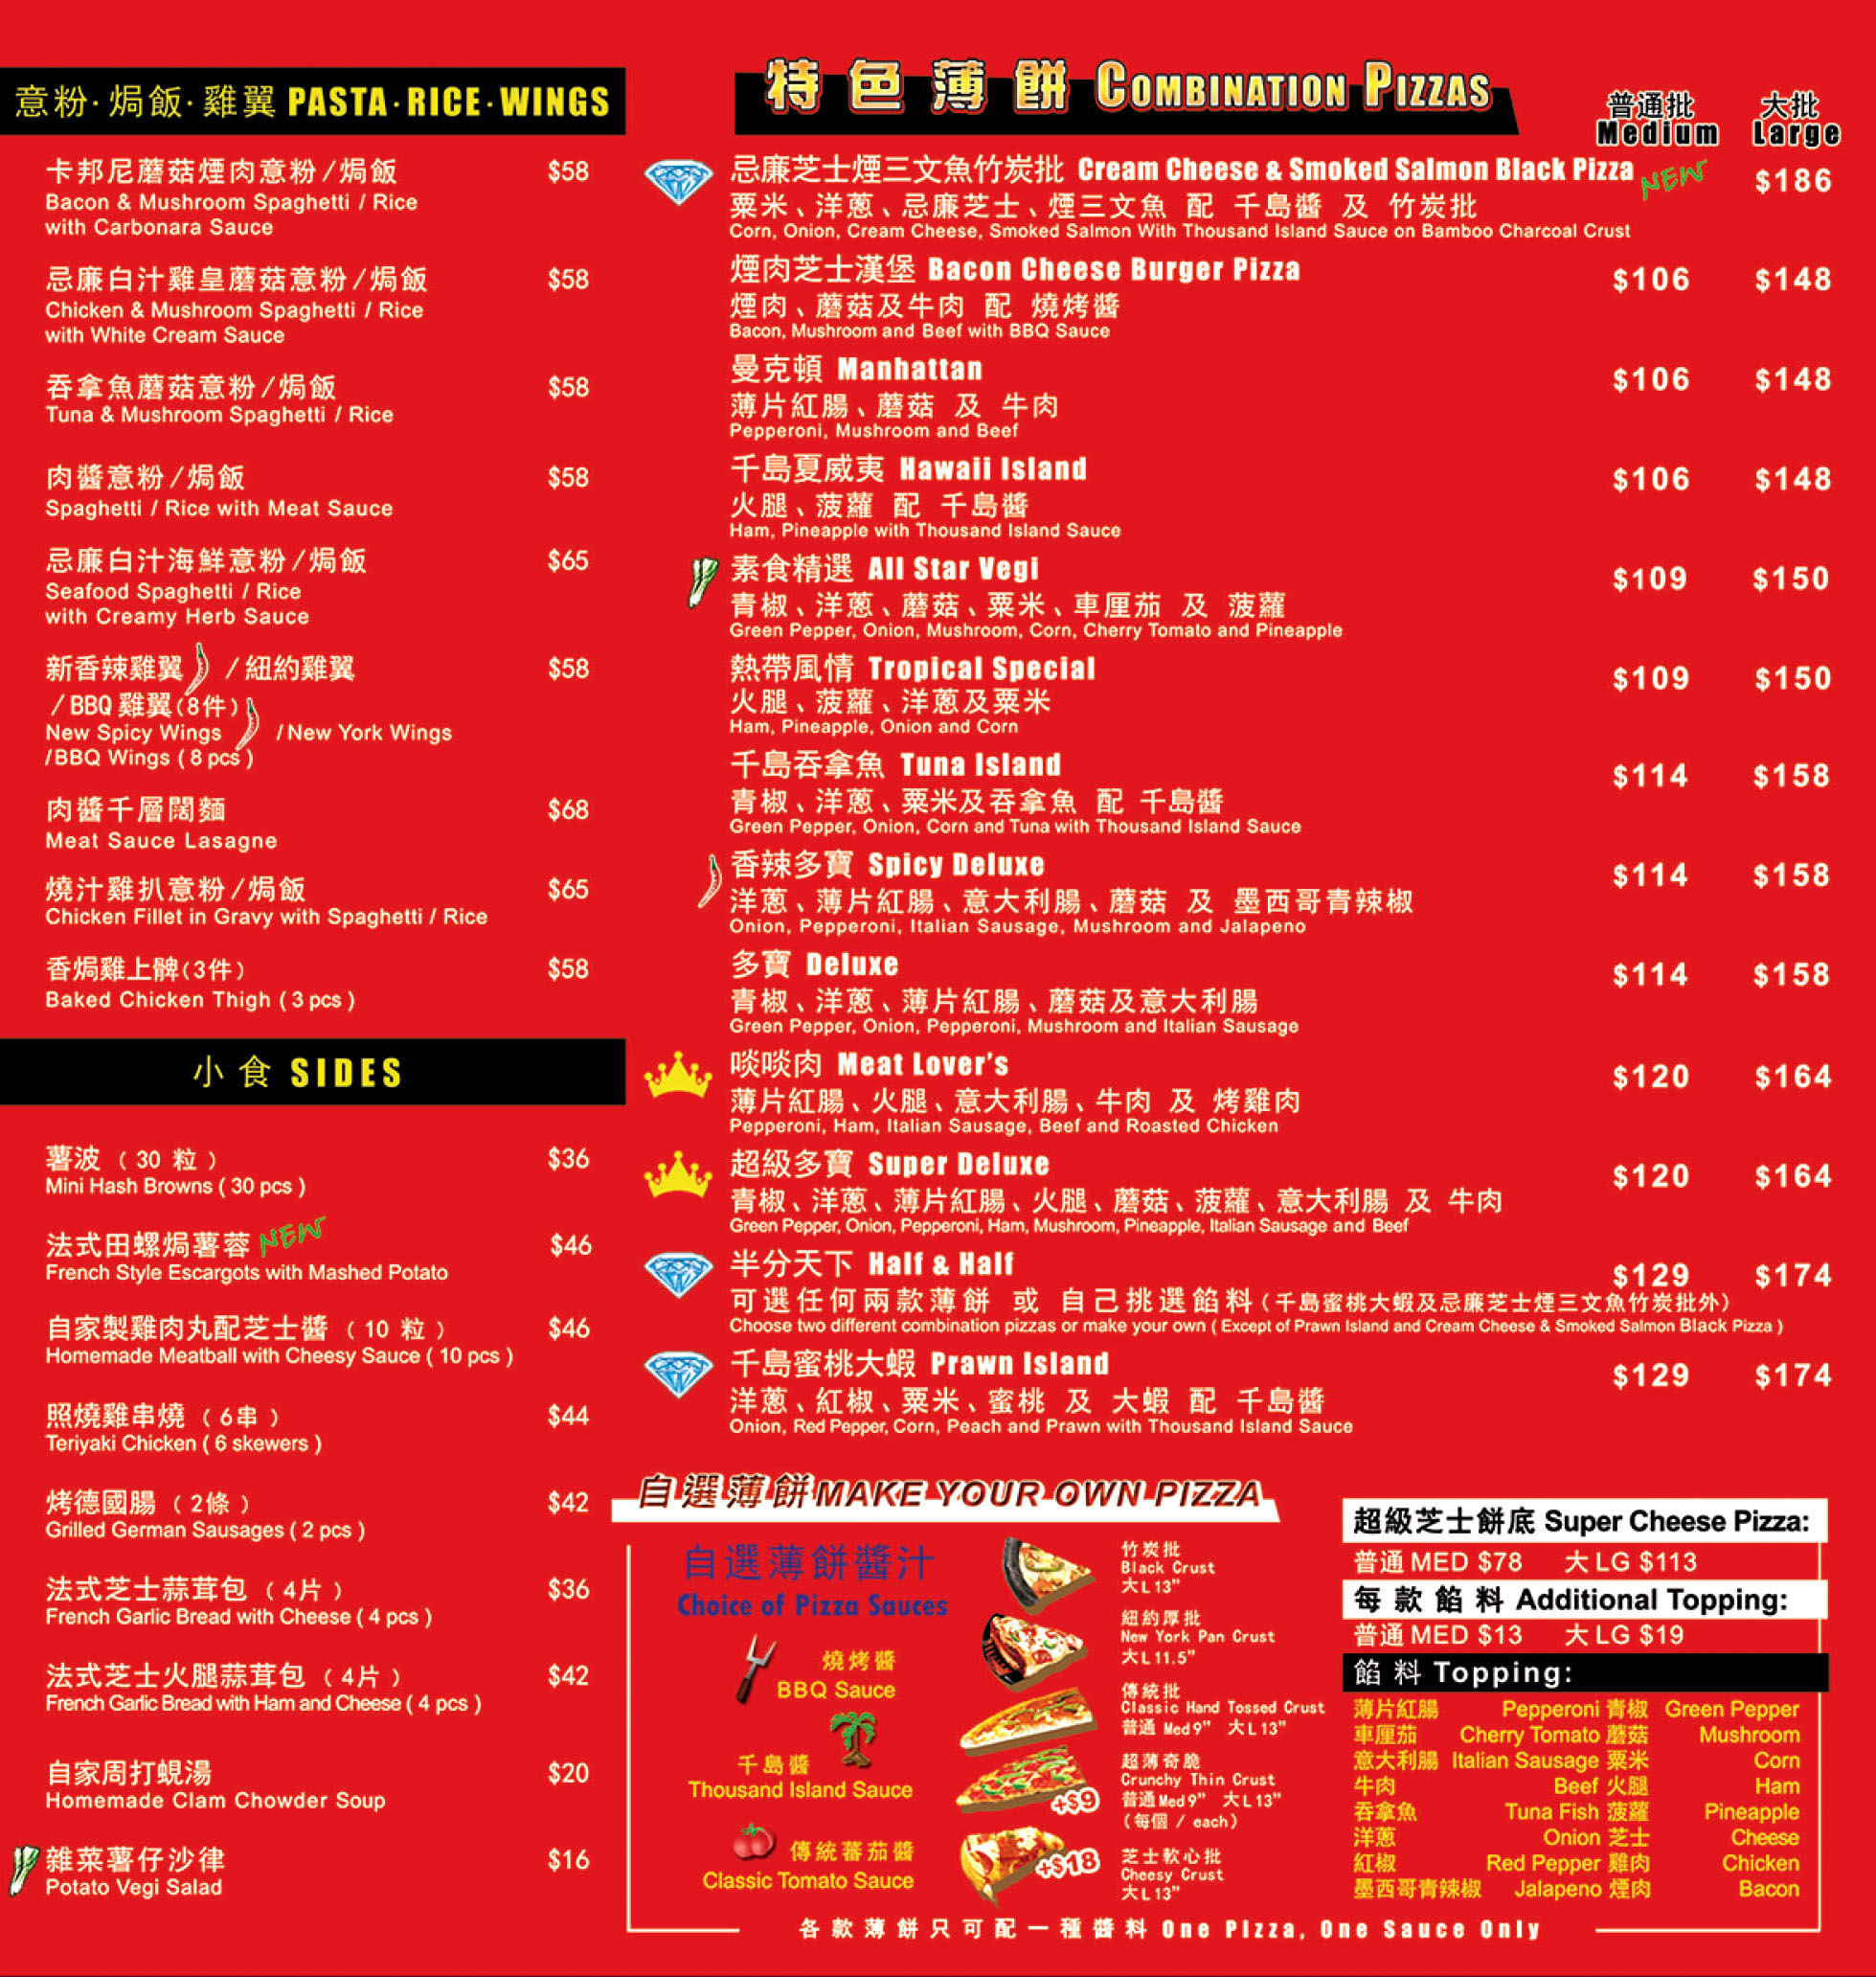 香港 pizza box 薄餅速遞服務 pizza box delivery menu promotion package hong kong 速遞美食外賣紙餐劵餐單特價錢優惠價格餐牌價目表